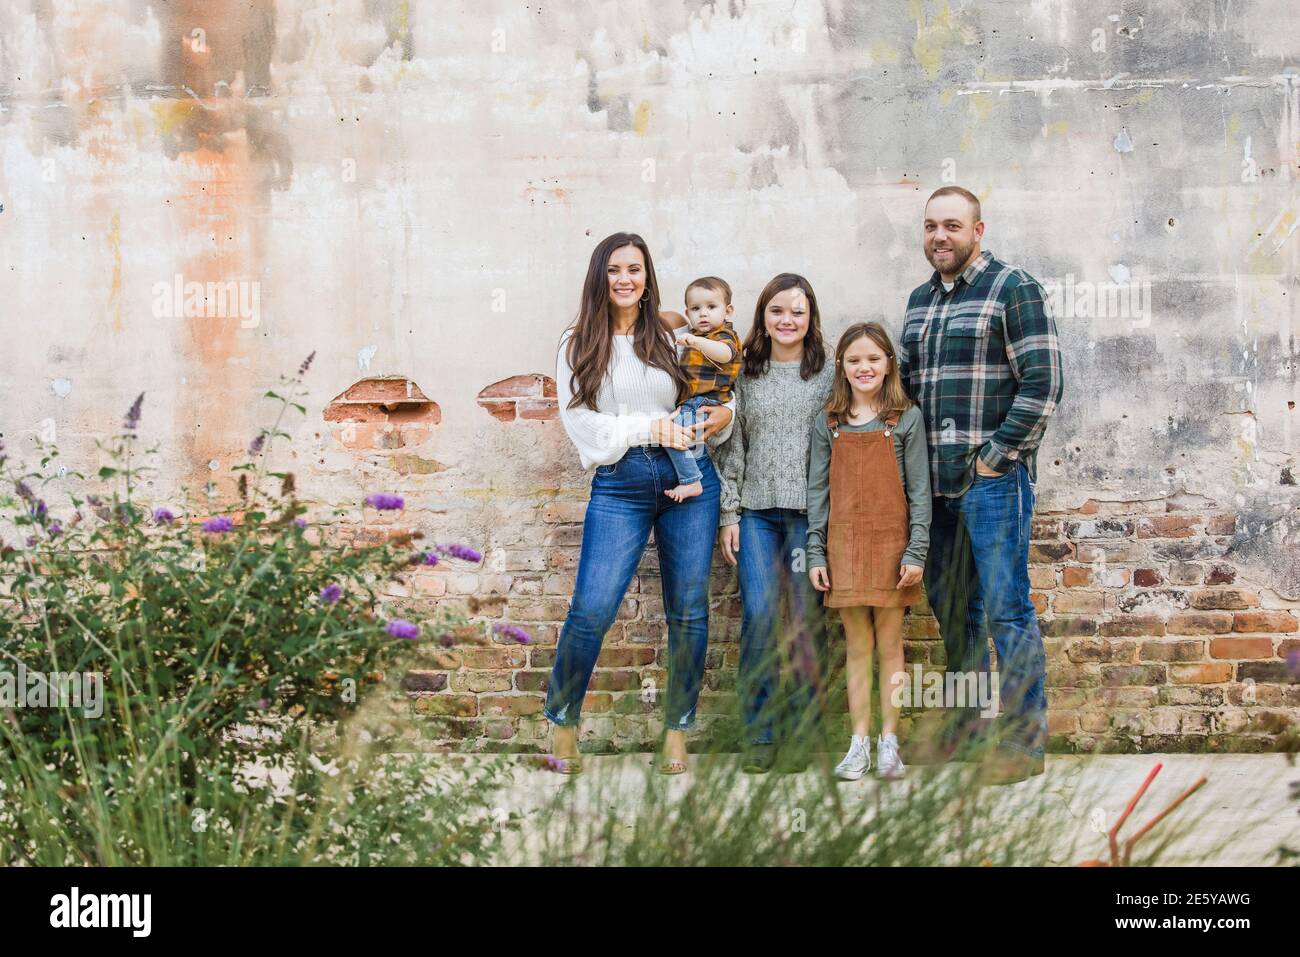 Eine fünfköpfige Familie mit zwei Mädchen und einem Baby Junge, der an einer urbane alte Ziegelmauer steht Stockfoto